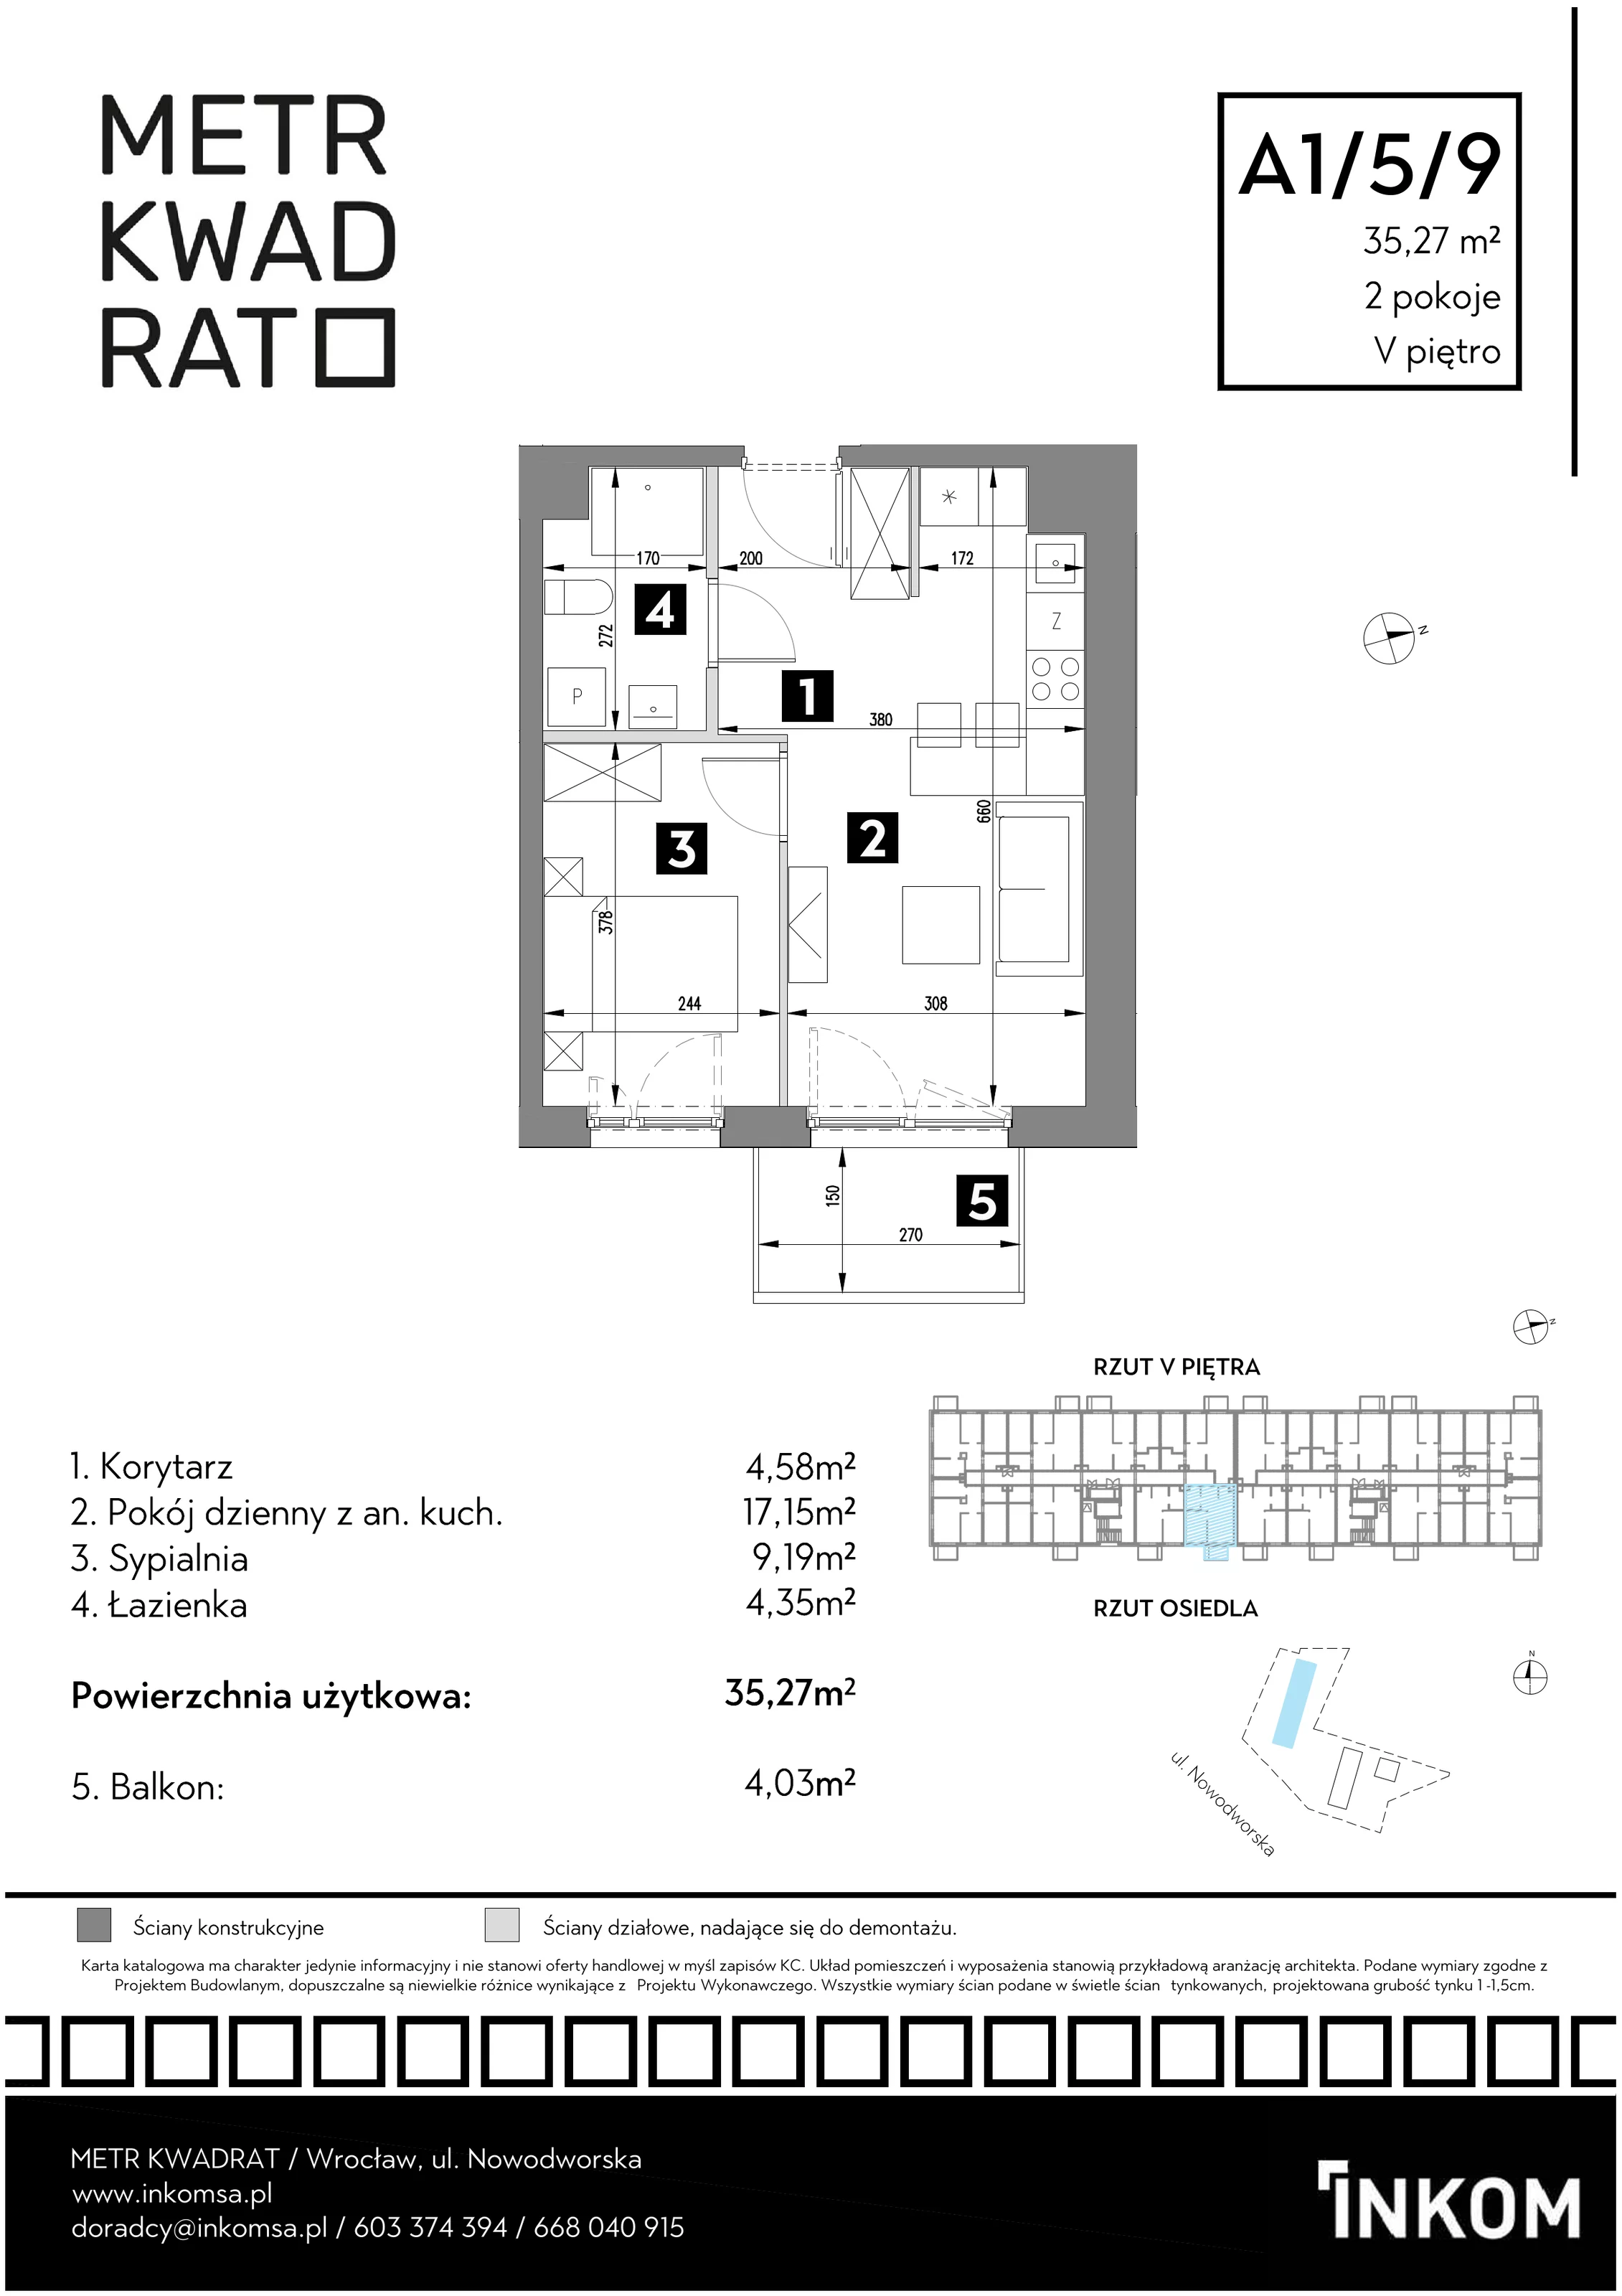 Mieszkanie 35,27 m², piętro 5, oferta nr A1/5/9, Metr Kwadrat, Wrocław, Nowy Dwór, ul. Nowodworska 17B